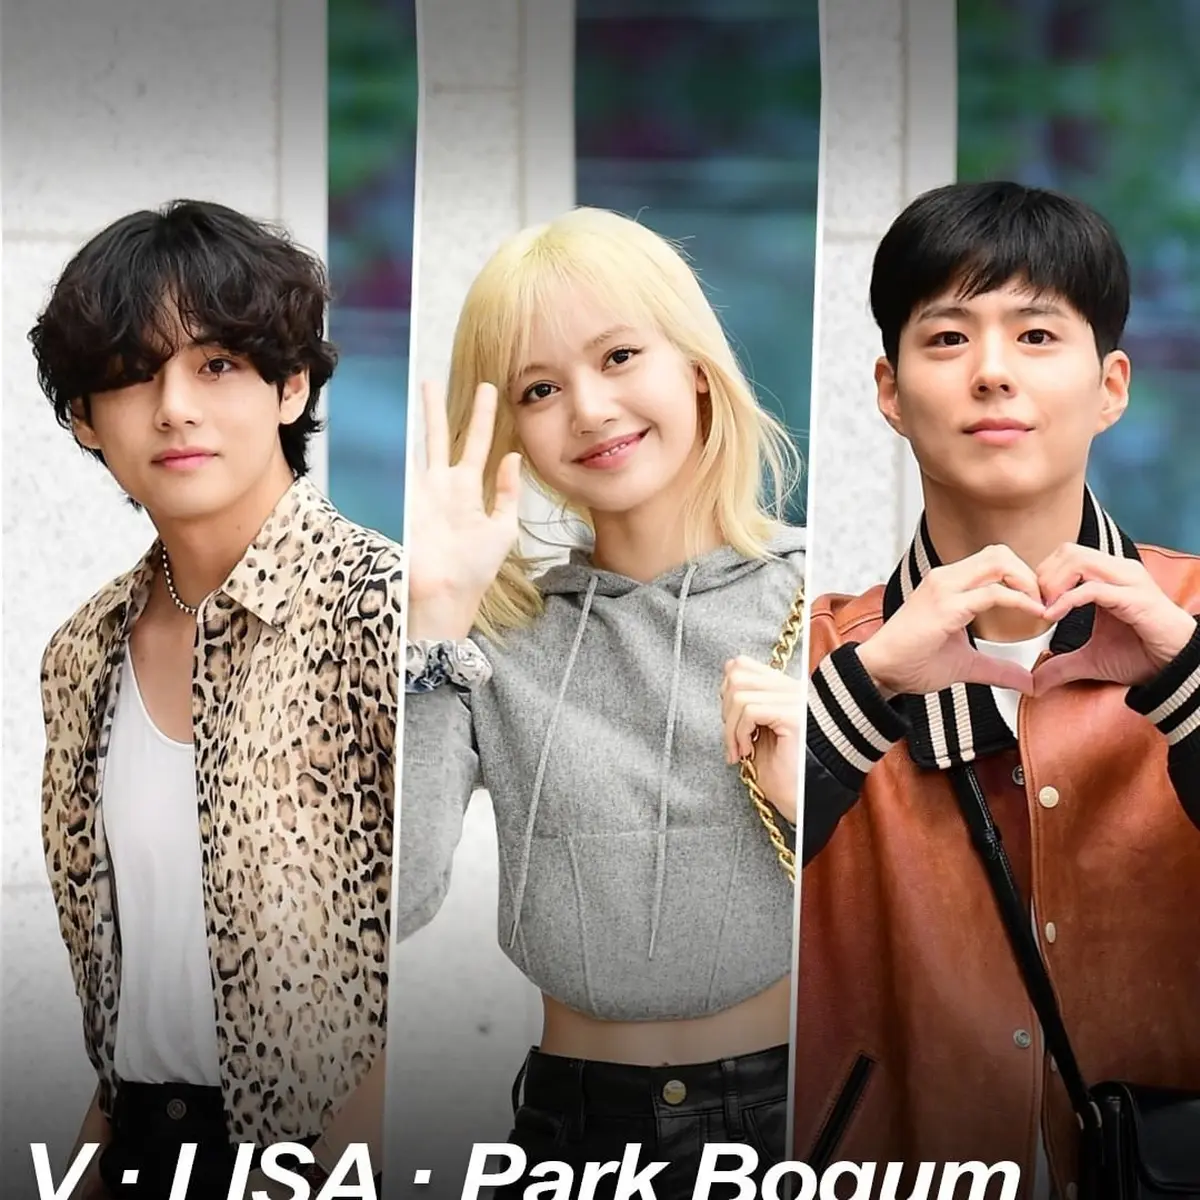 V of BTS, Blackpink Lisa, and Park Bo Gum grace Paris Fashion Week